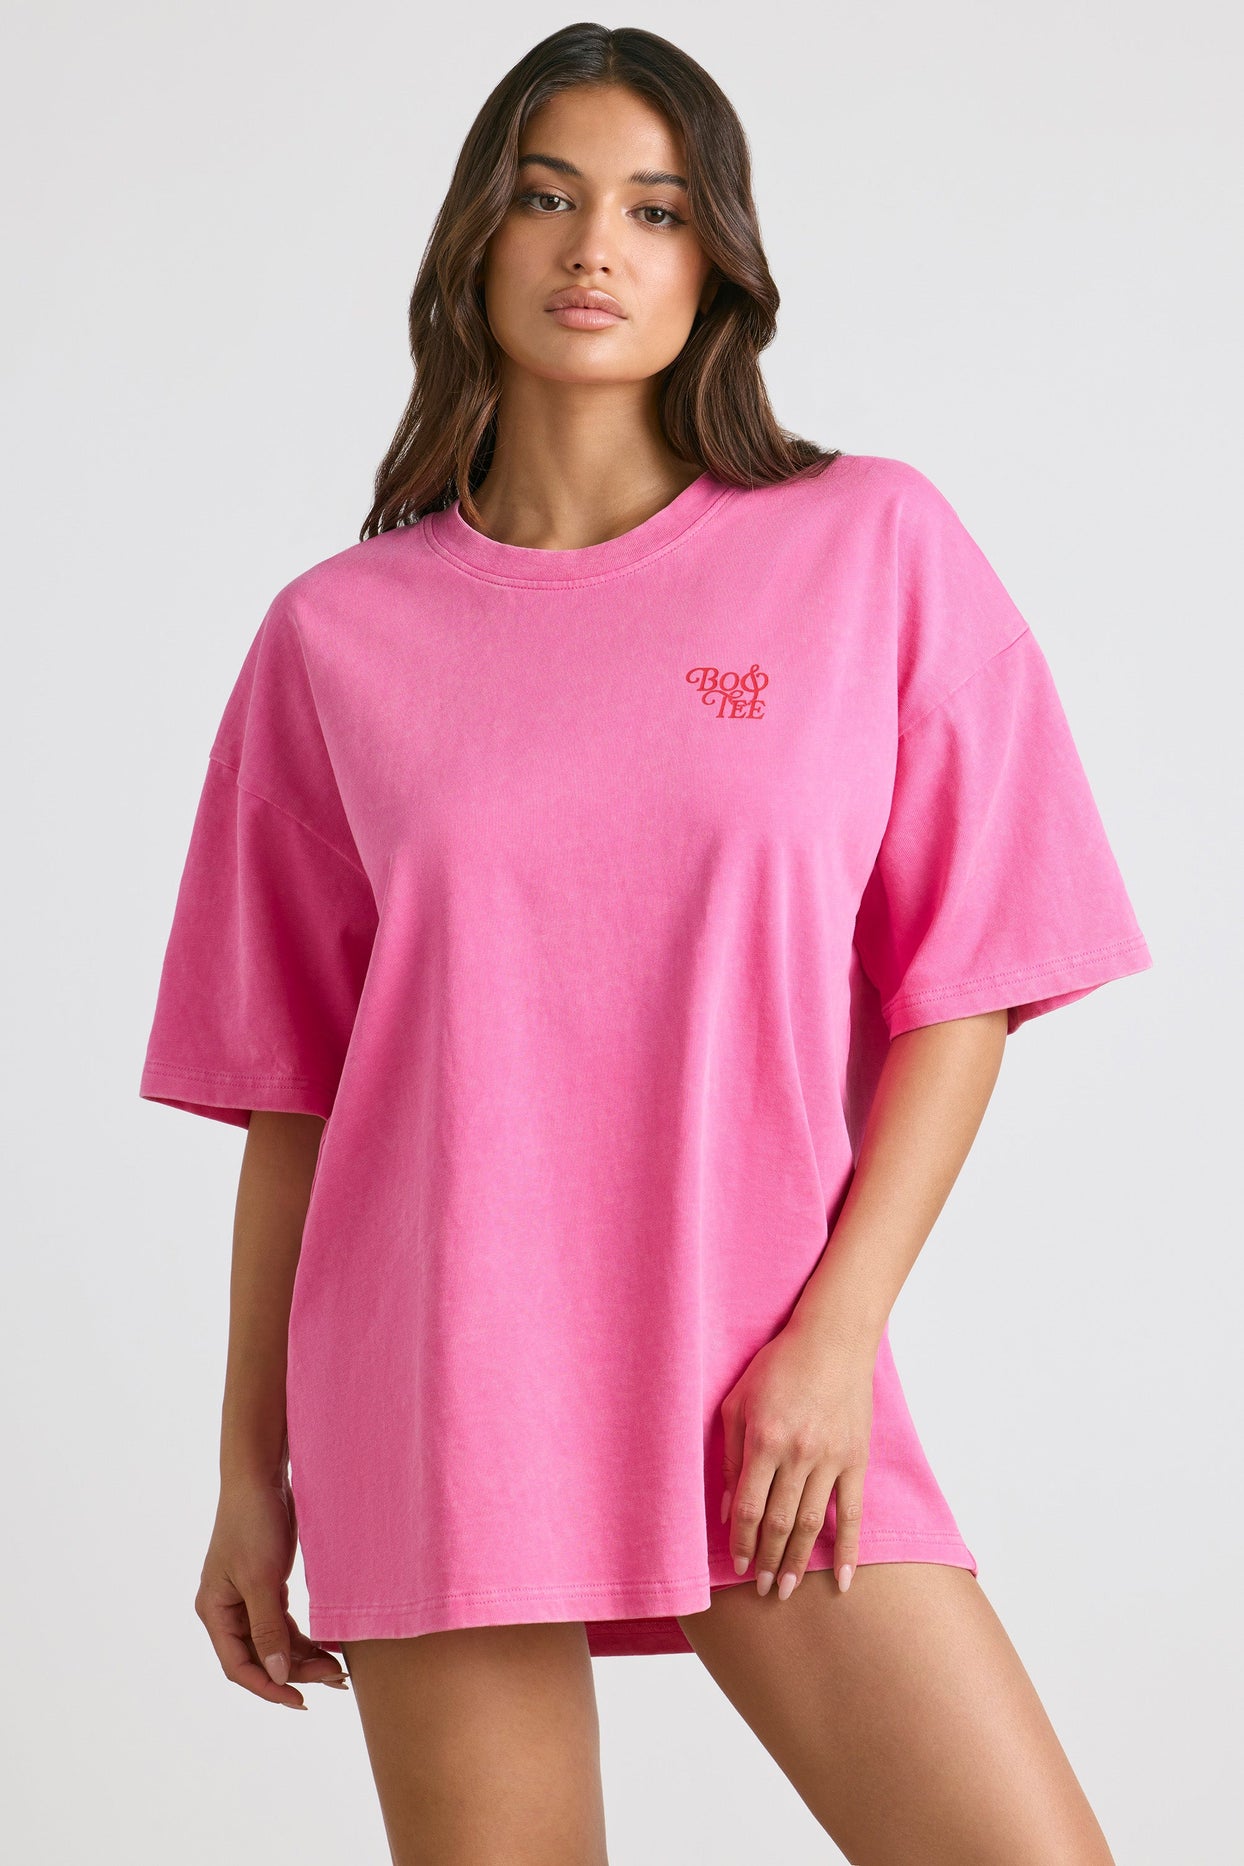 Camiseta extragrande de manga corta en rosa fuerte